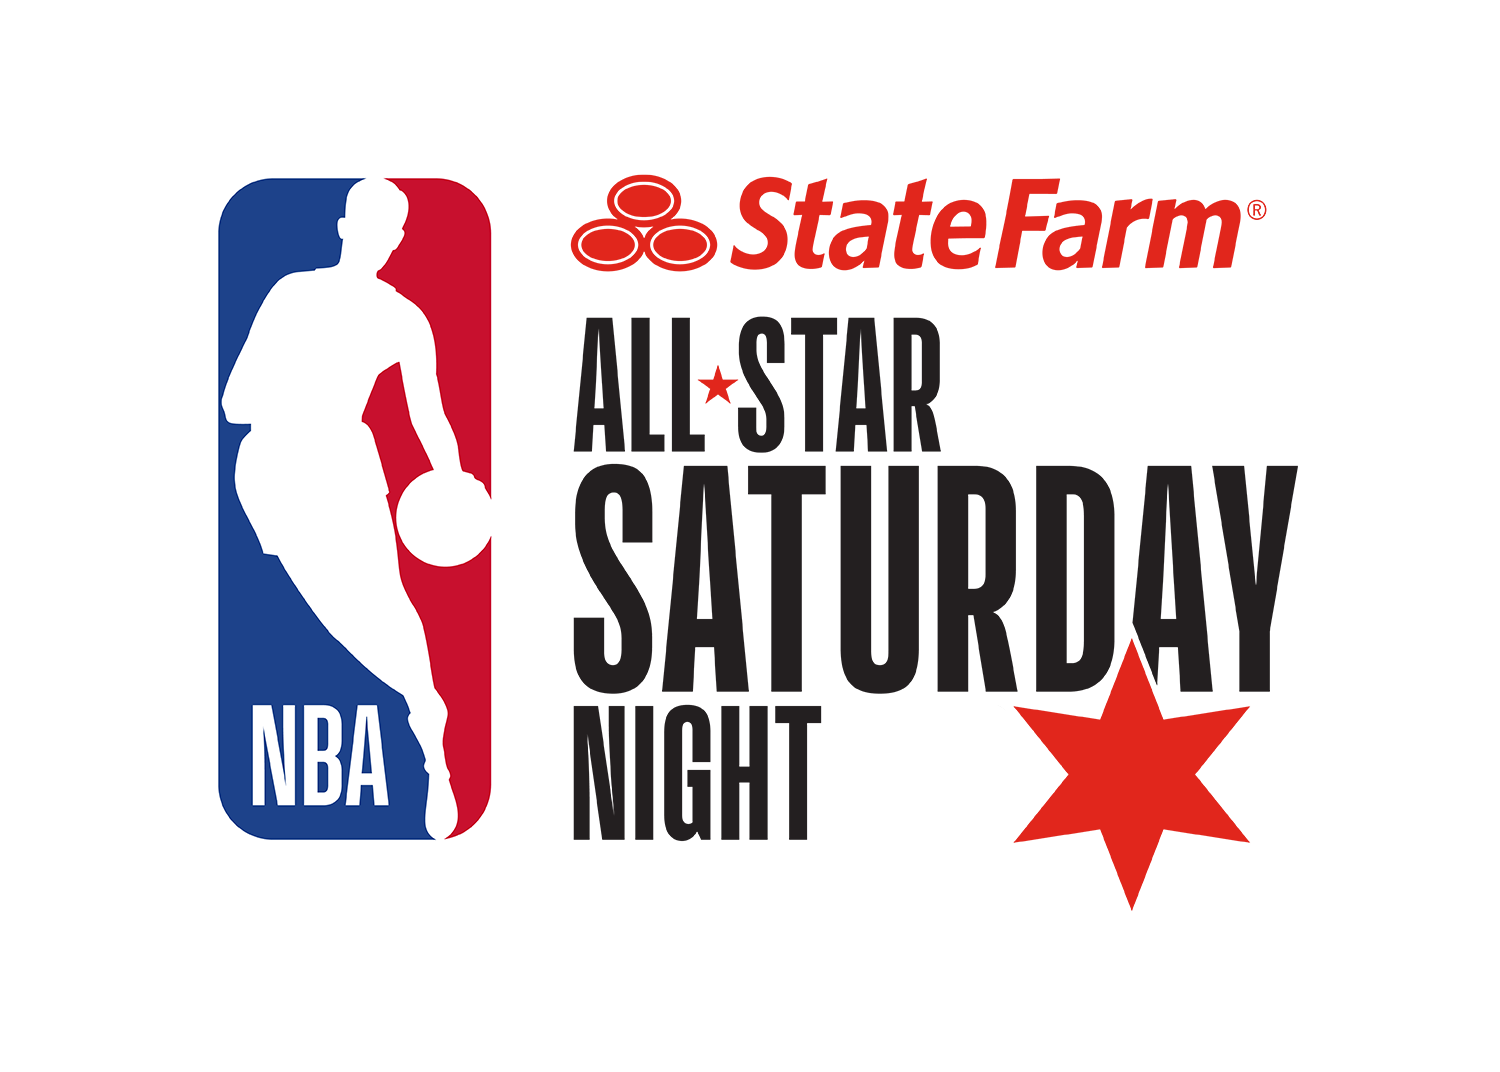 NBA All Star Saturday Night at Vivint Arena